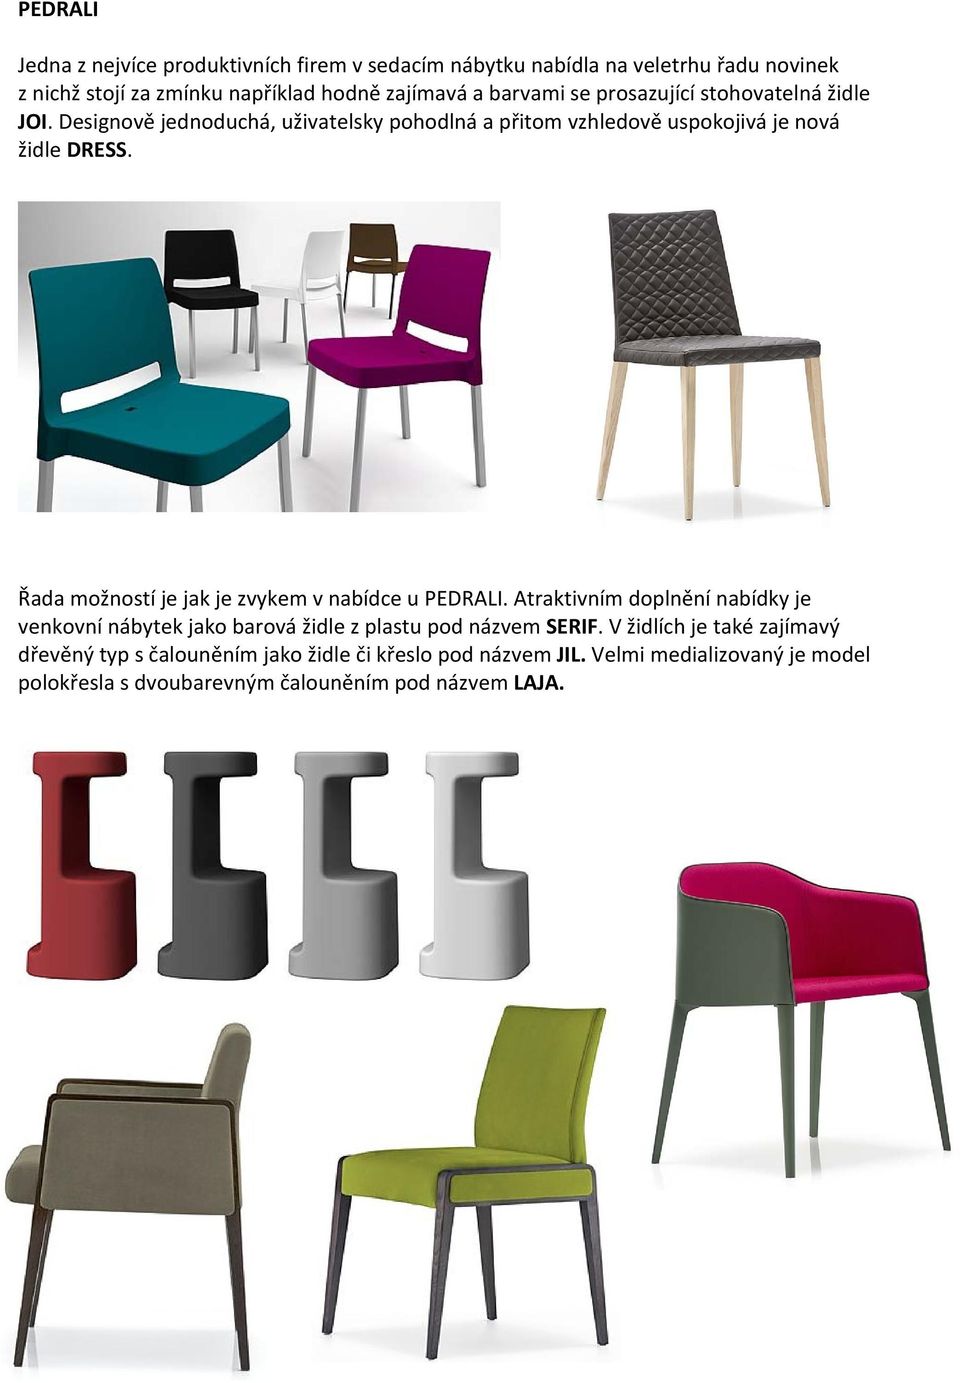 Řada možností je jak je zvykem v nabídce u PEDRALI. Atraktivním doplnění nabídky je venkovní nábytek jako barová židle z plastu pod názvem SERIF.